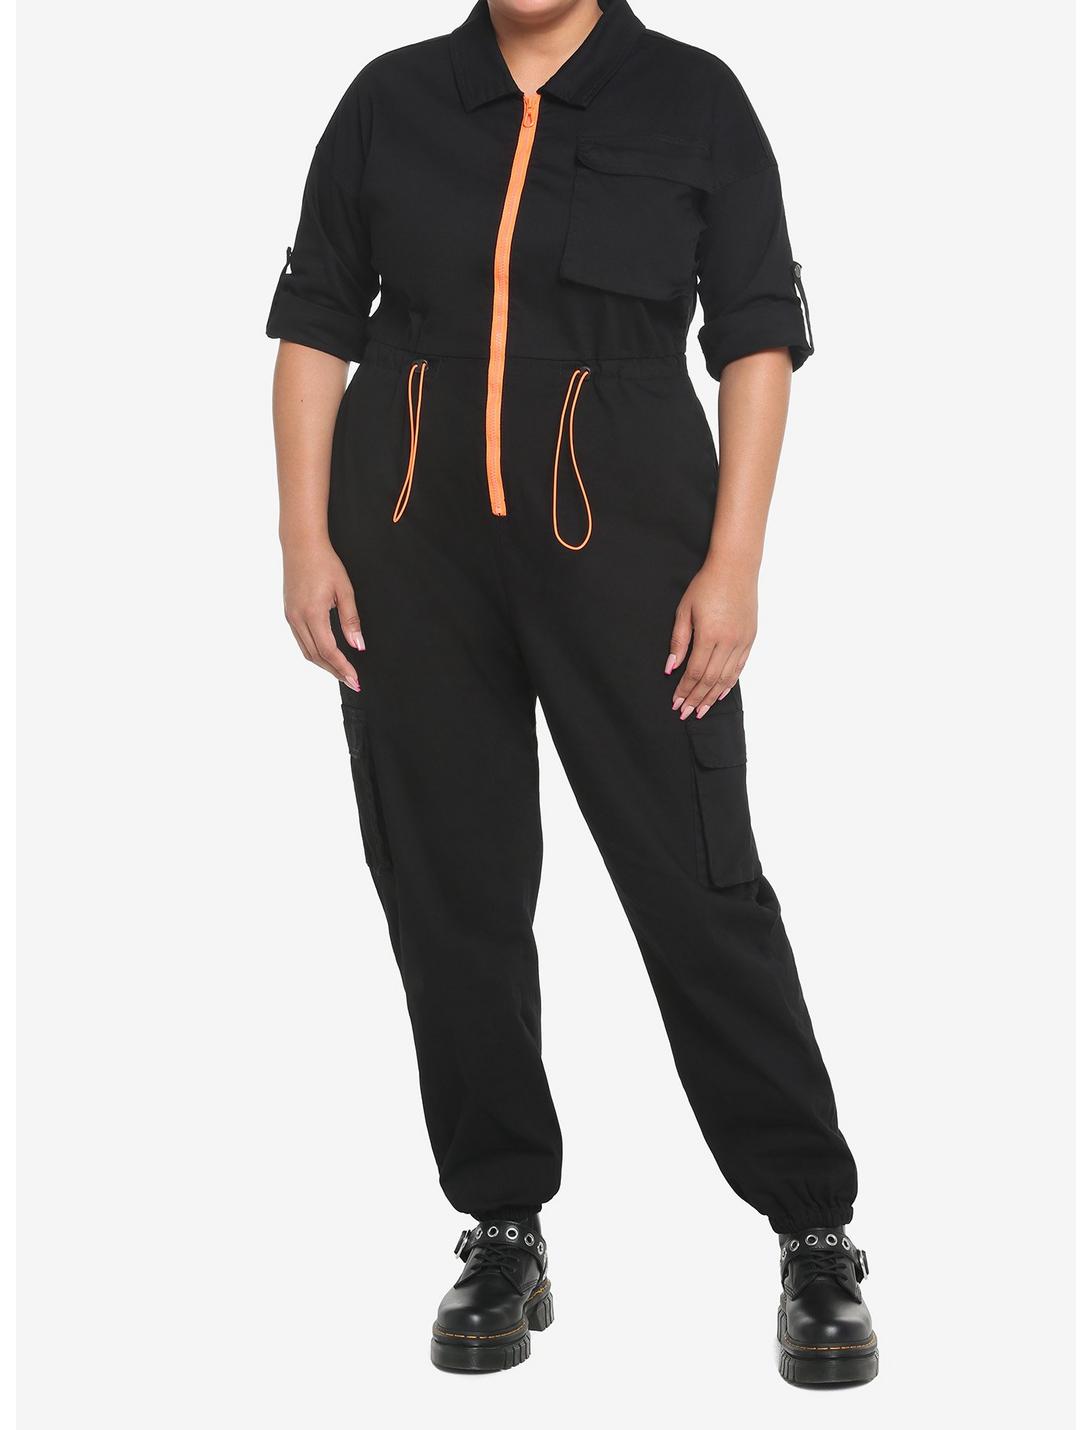 Black & Orange Jogger Jumpsuit Plus Size, BLACK, hi-res